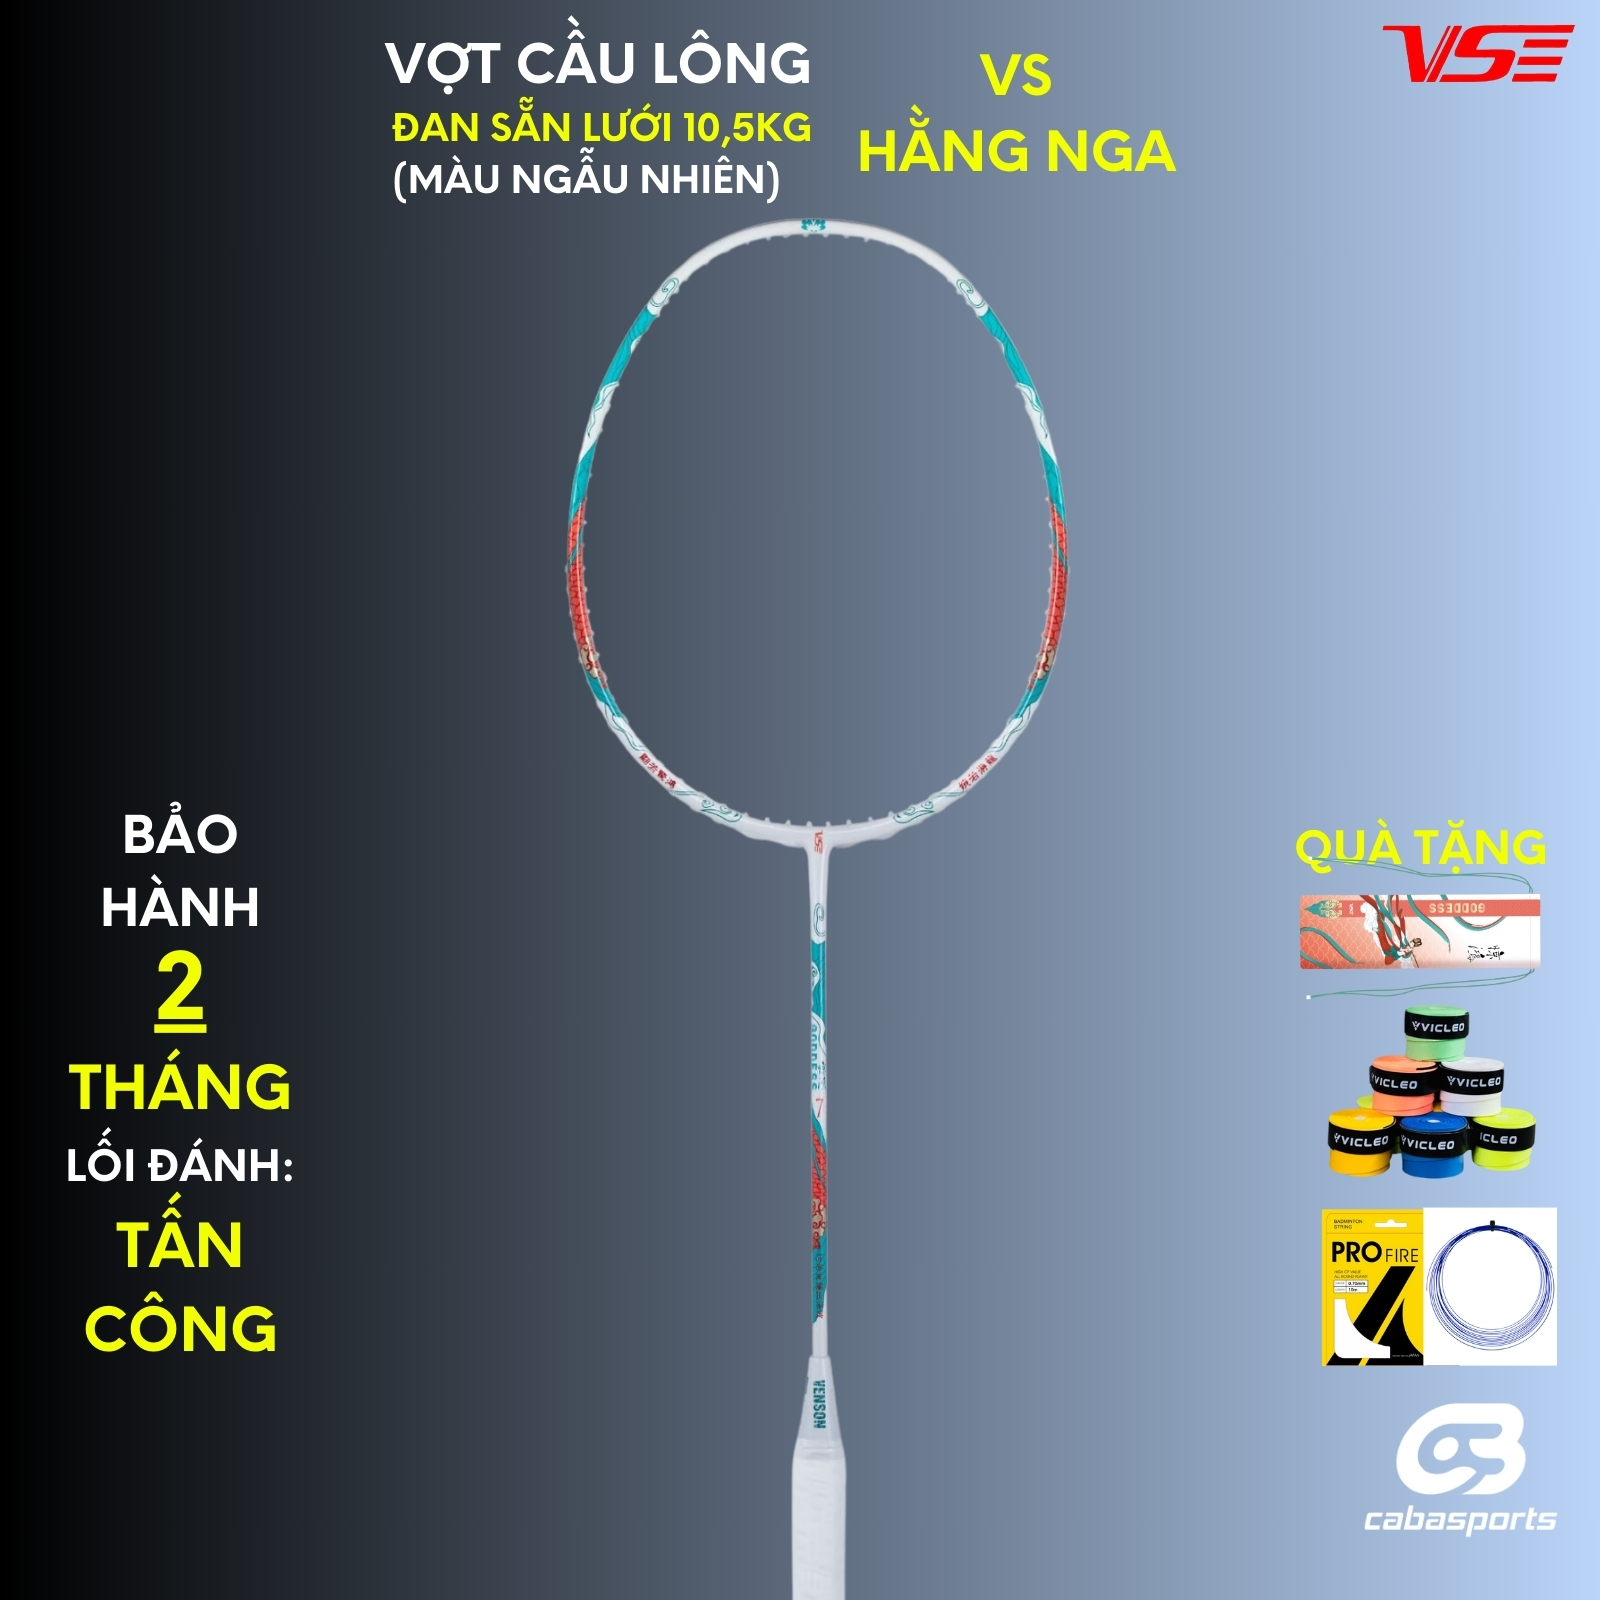 Hình ảnh Vợt cầu lông VS Hằng Nga nội địa đã đan lưới 10.5kg chuyên công Bảo hành khung vợt 02 tháng Kèm quà tặng túi vợt và quấn cán